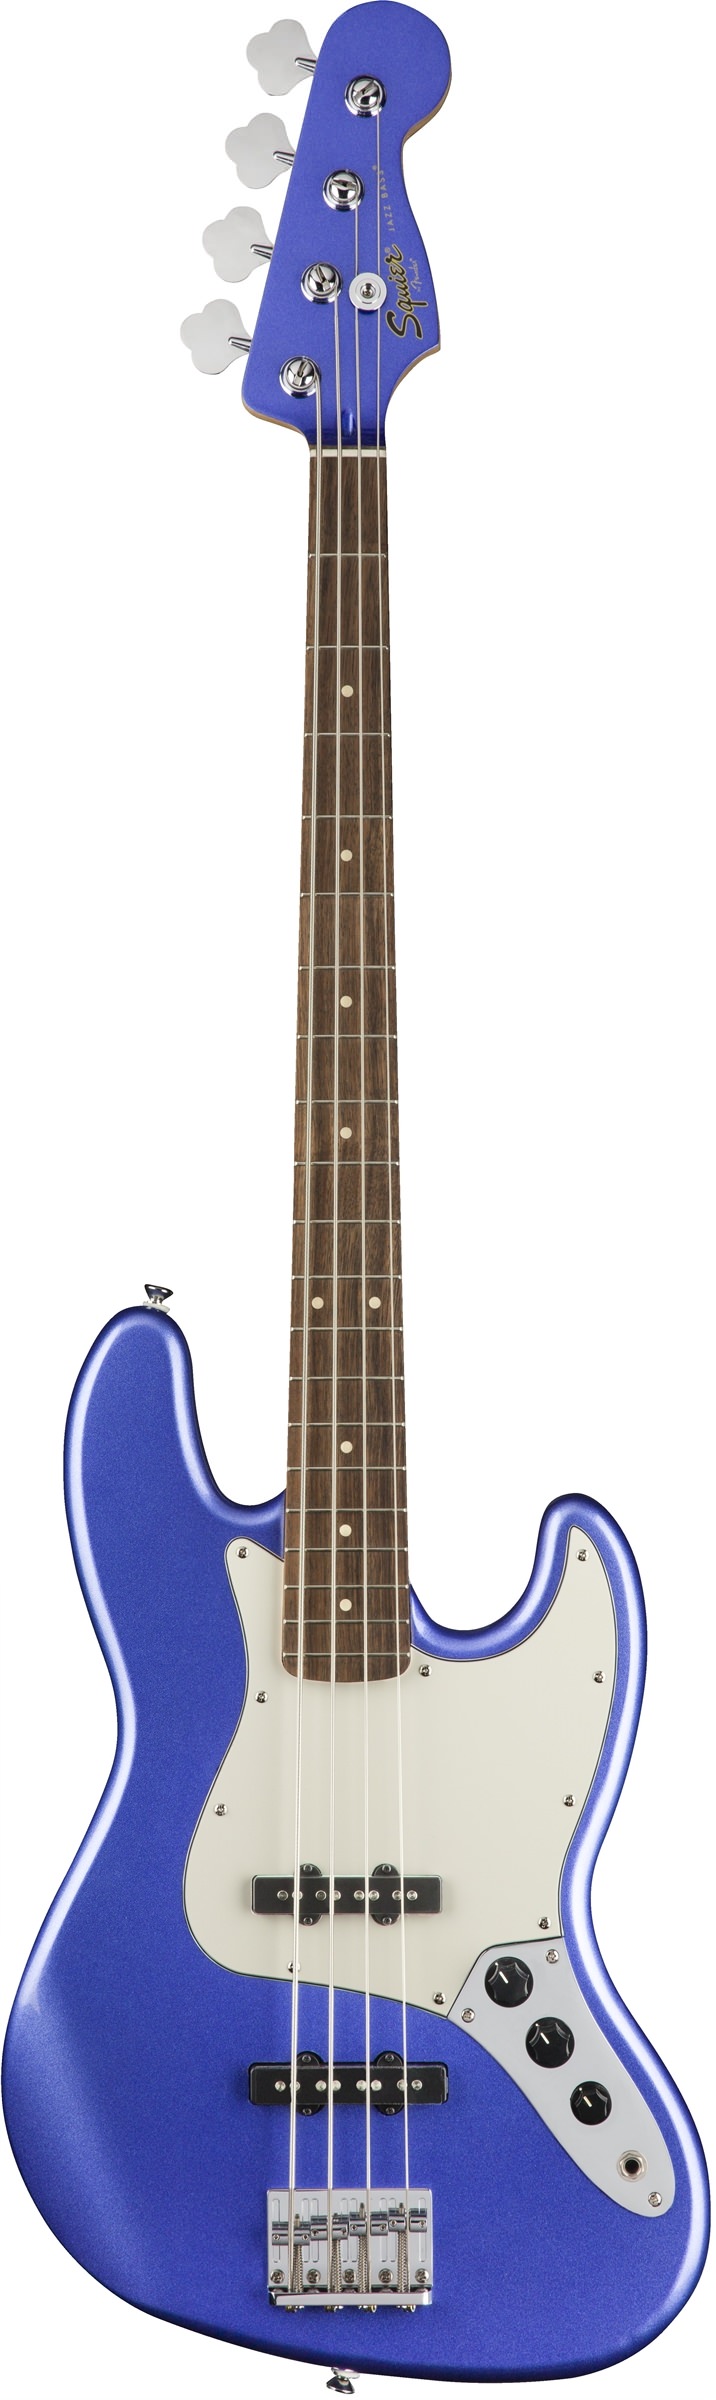 Squier Contemporary Jazz Bass®, Laurel Fingerboard, Ocean Blue Metallic